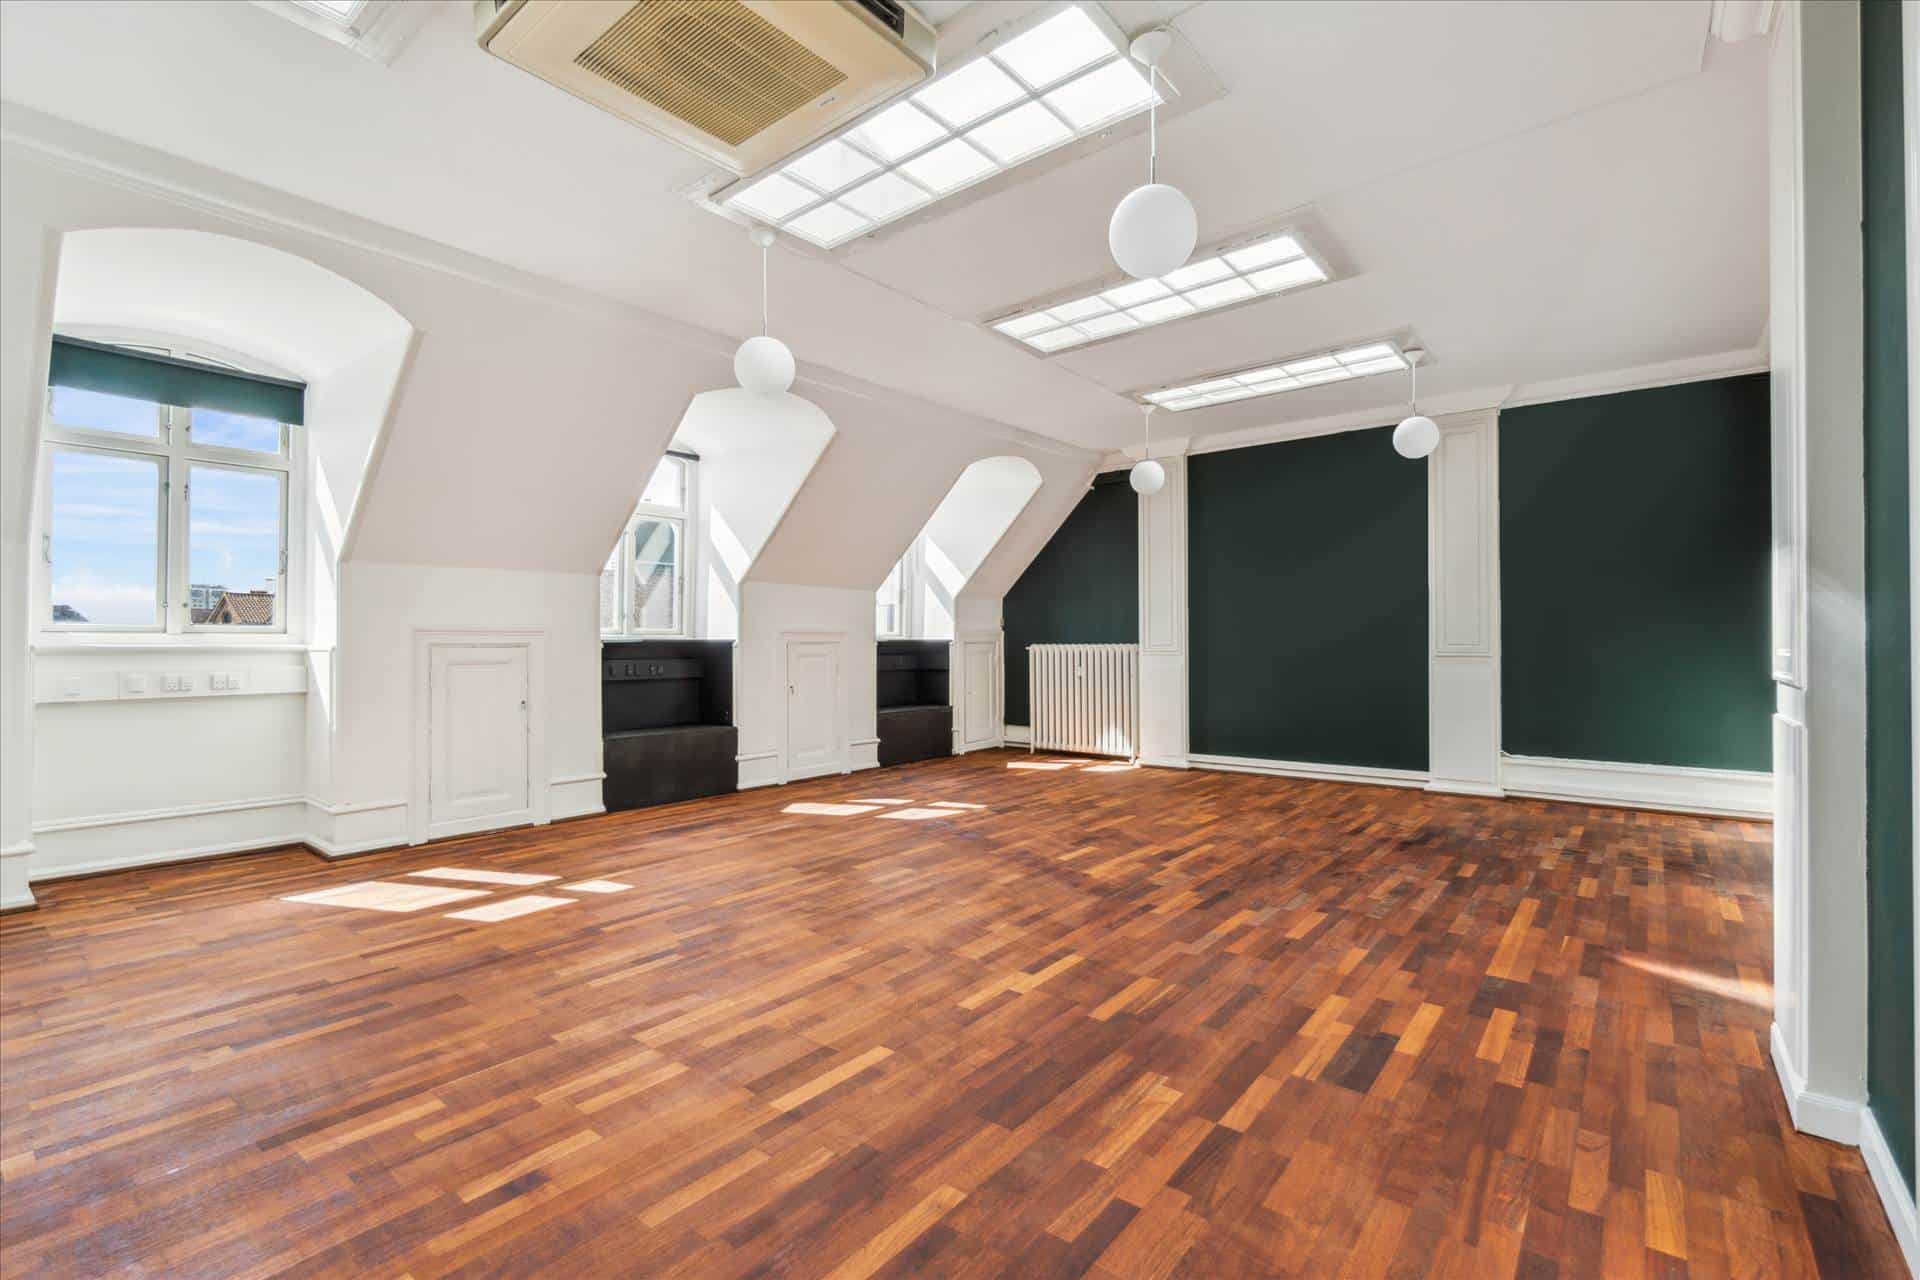 150 m² momsfrit kontor • ved Rådhuspladsen